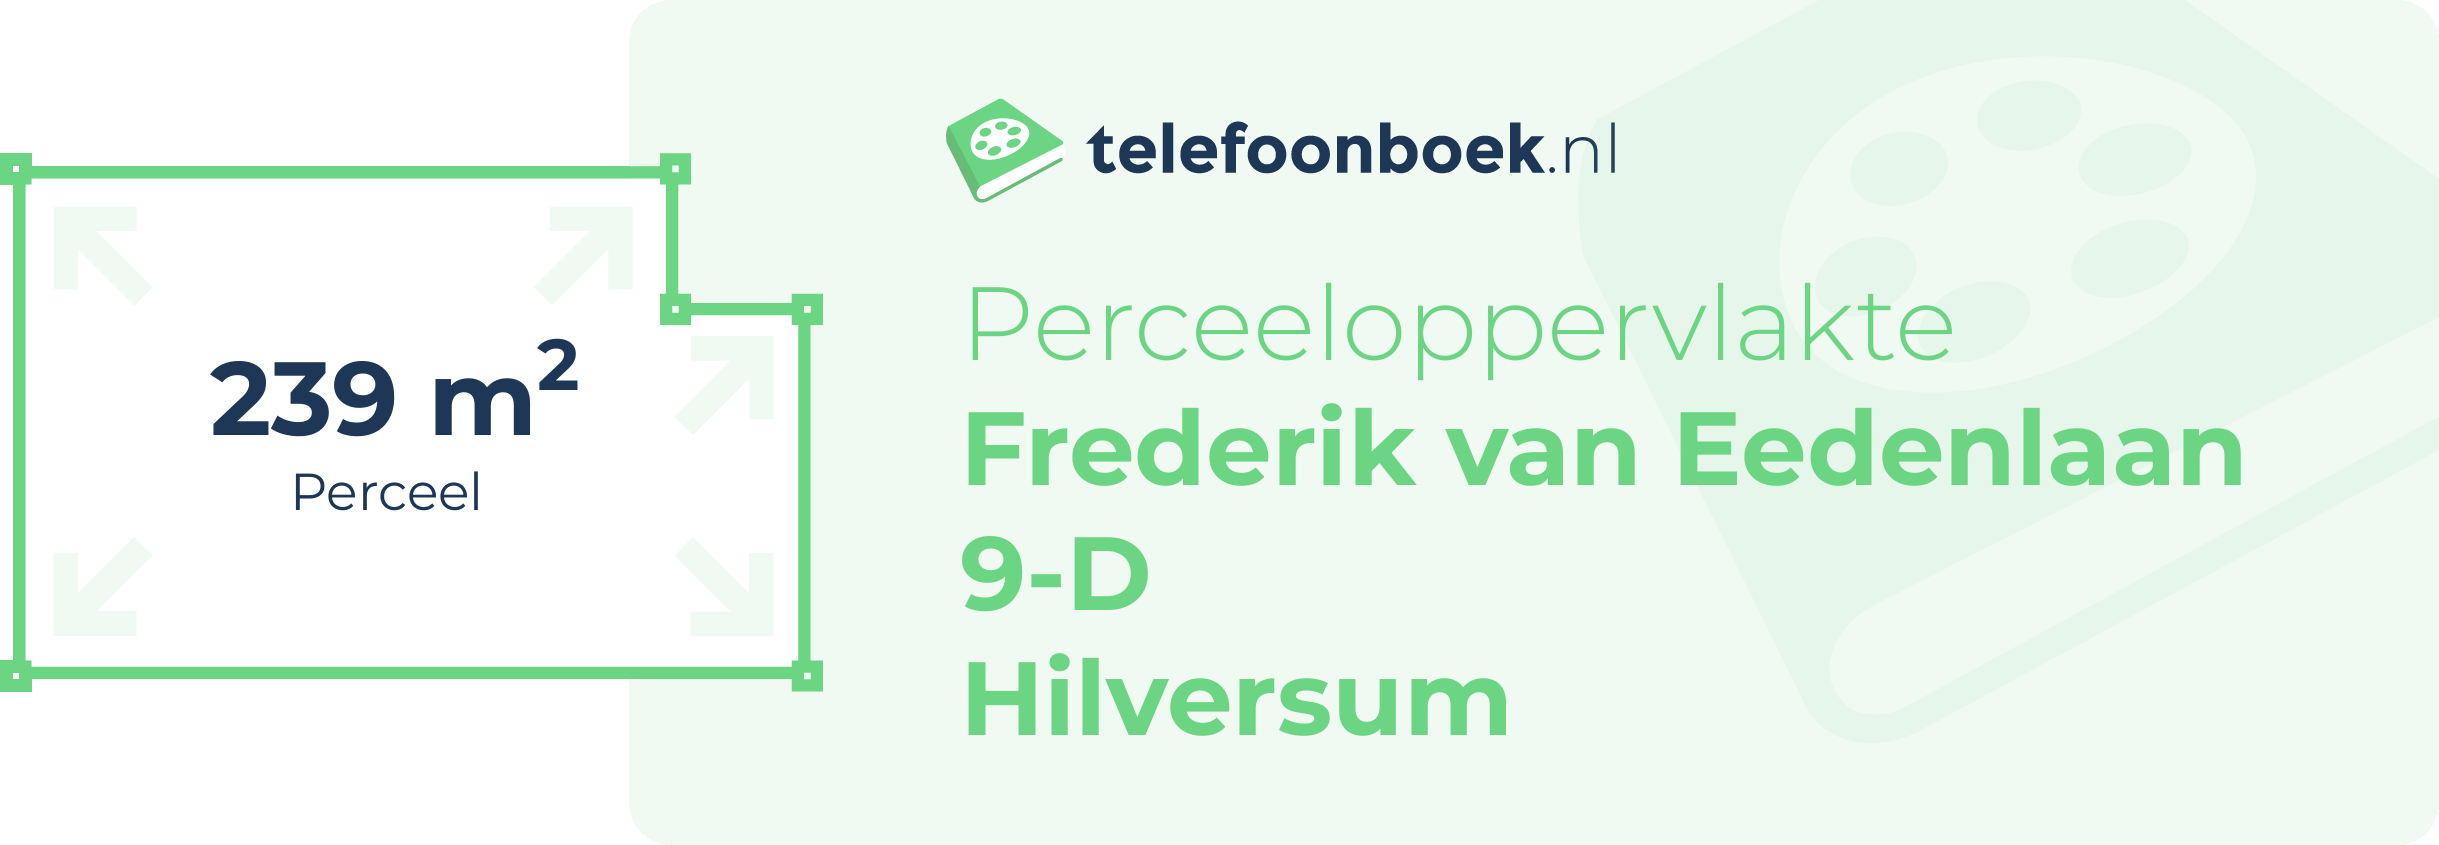 Perceeloppervlakte Frederik Van Eedenlaan 9-D Hilversum